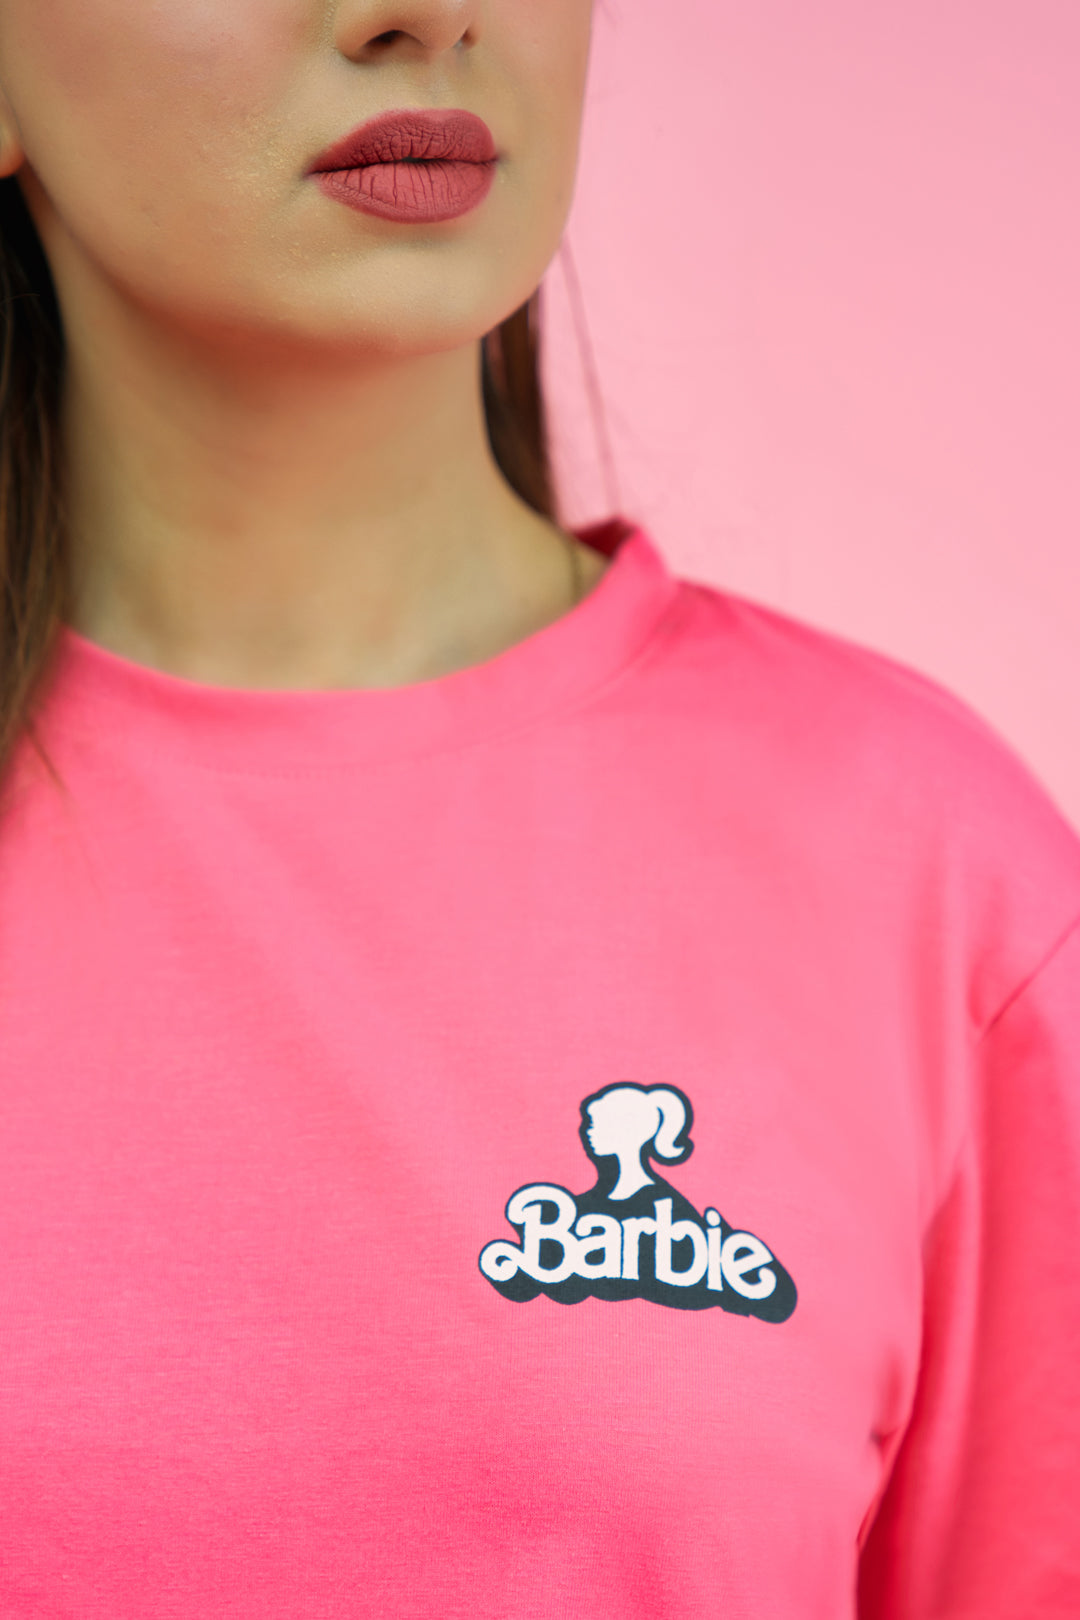 Barbie Tees